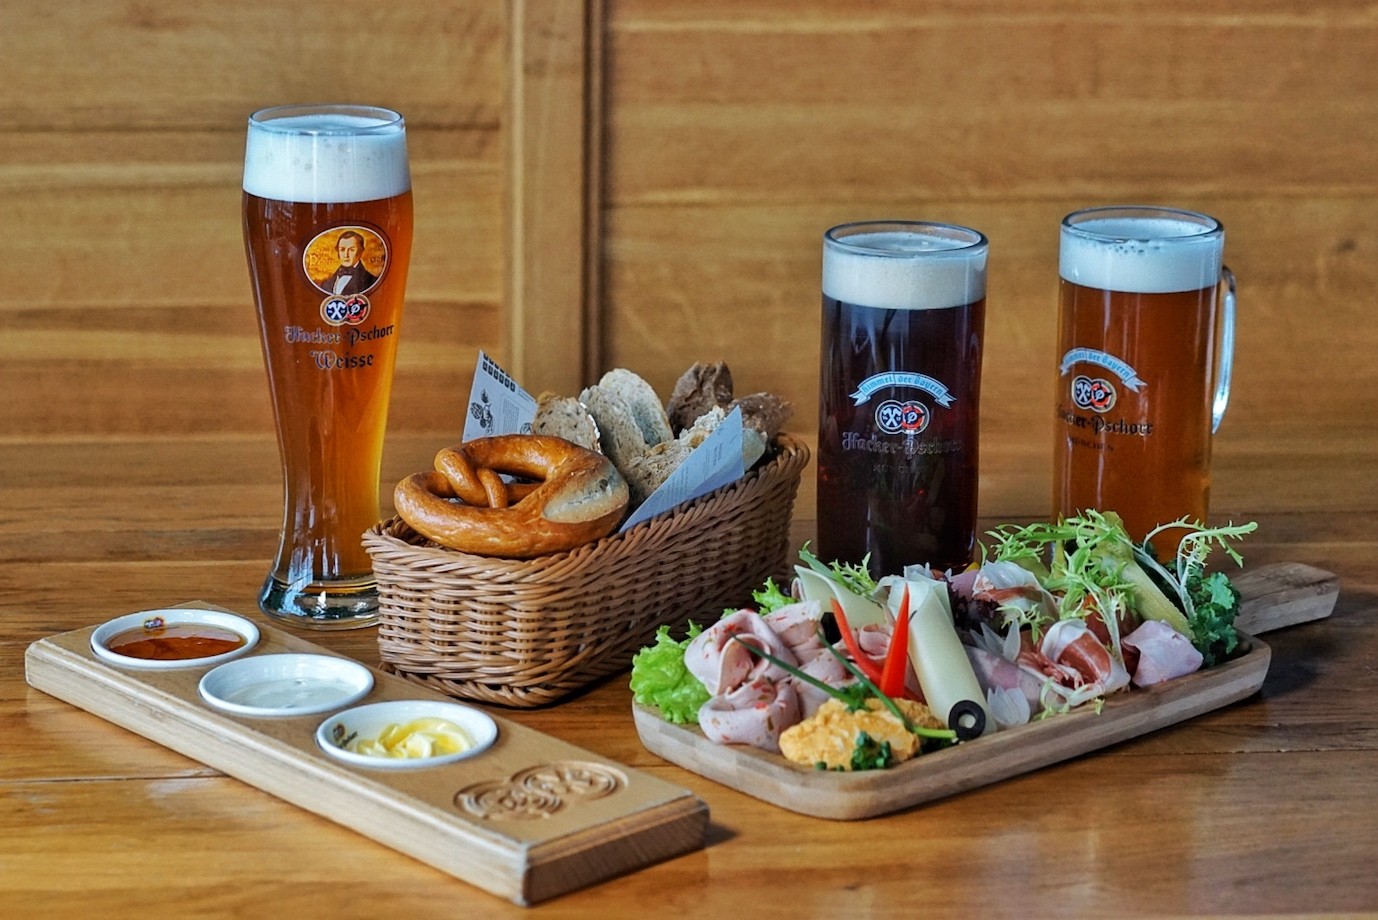 Free Flow German Beer & Food for Just ¥350